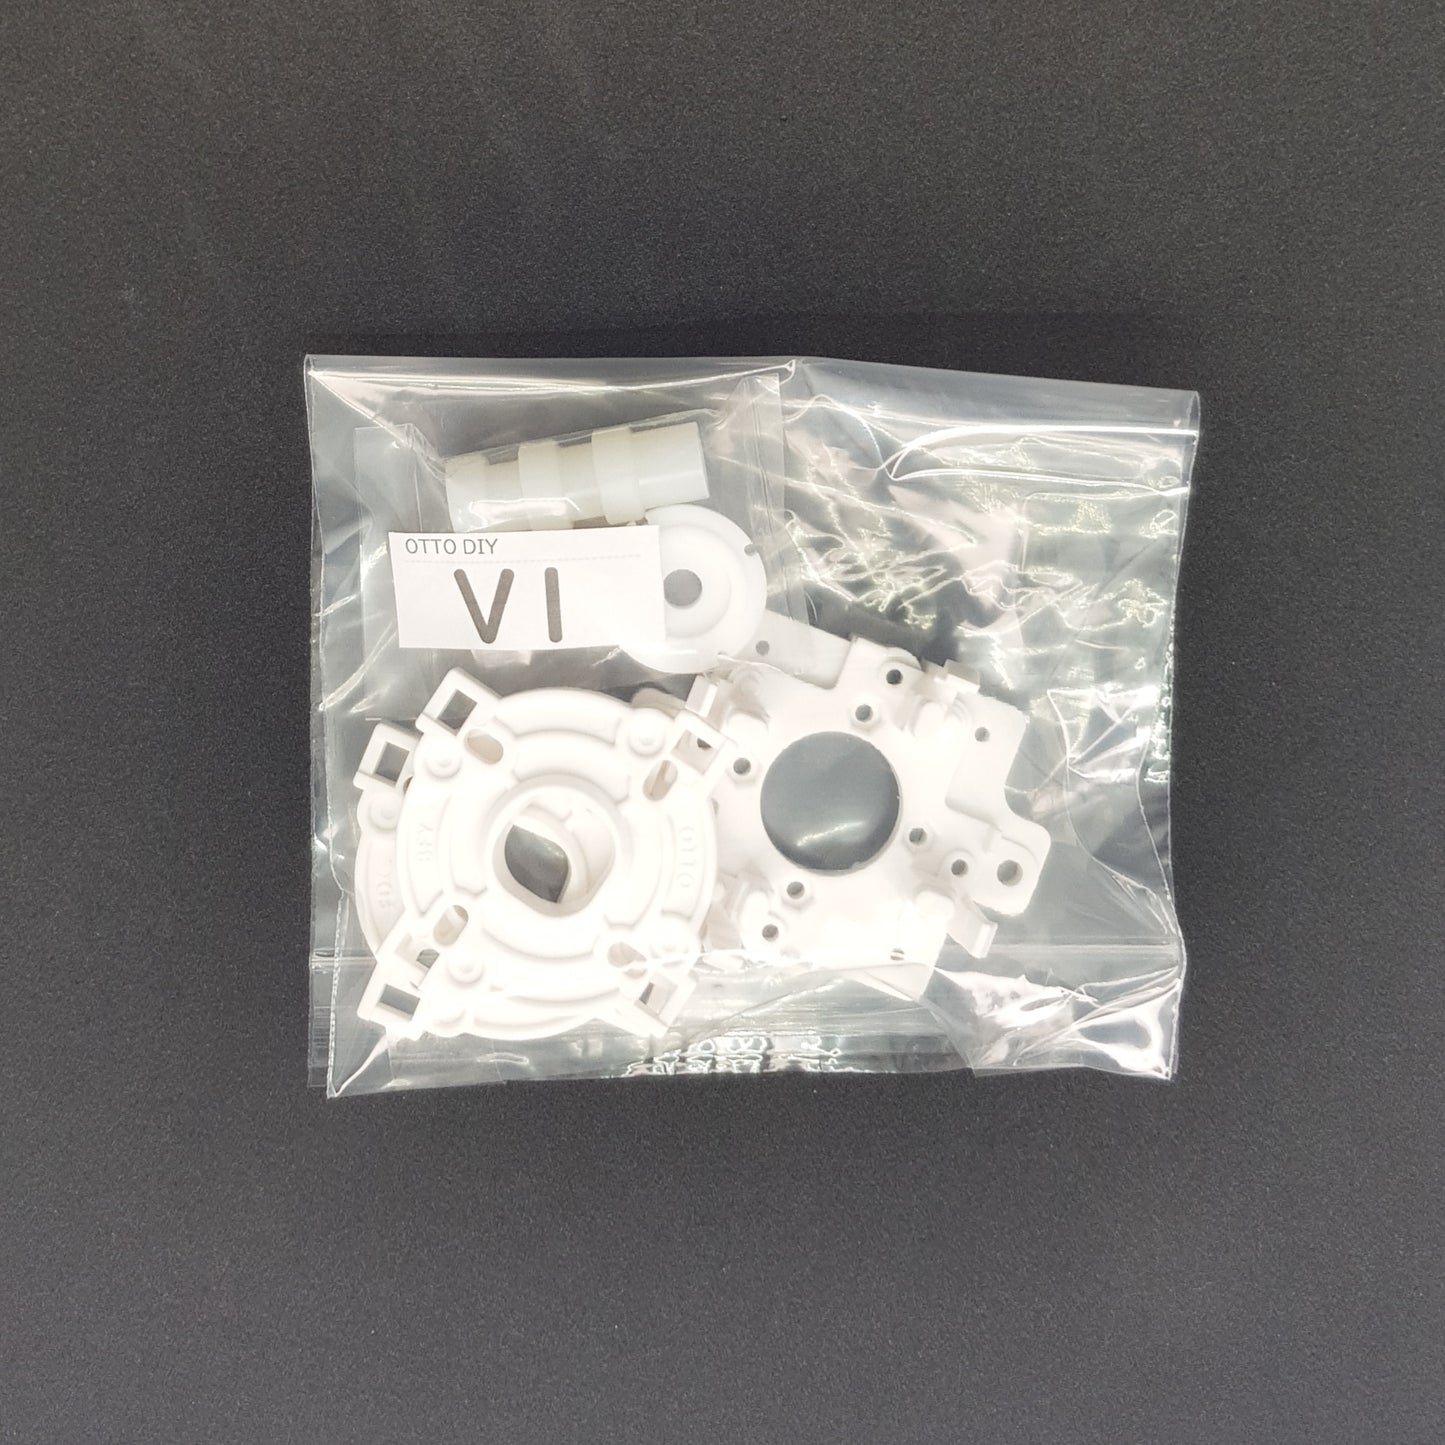 OTTO DIY V1 modification kit for JLF and Hayabusa